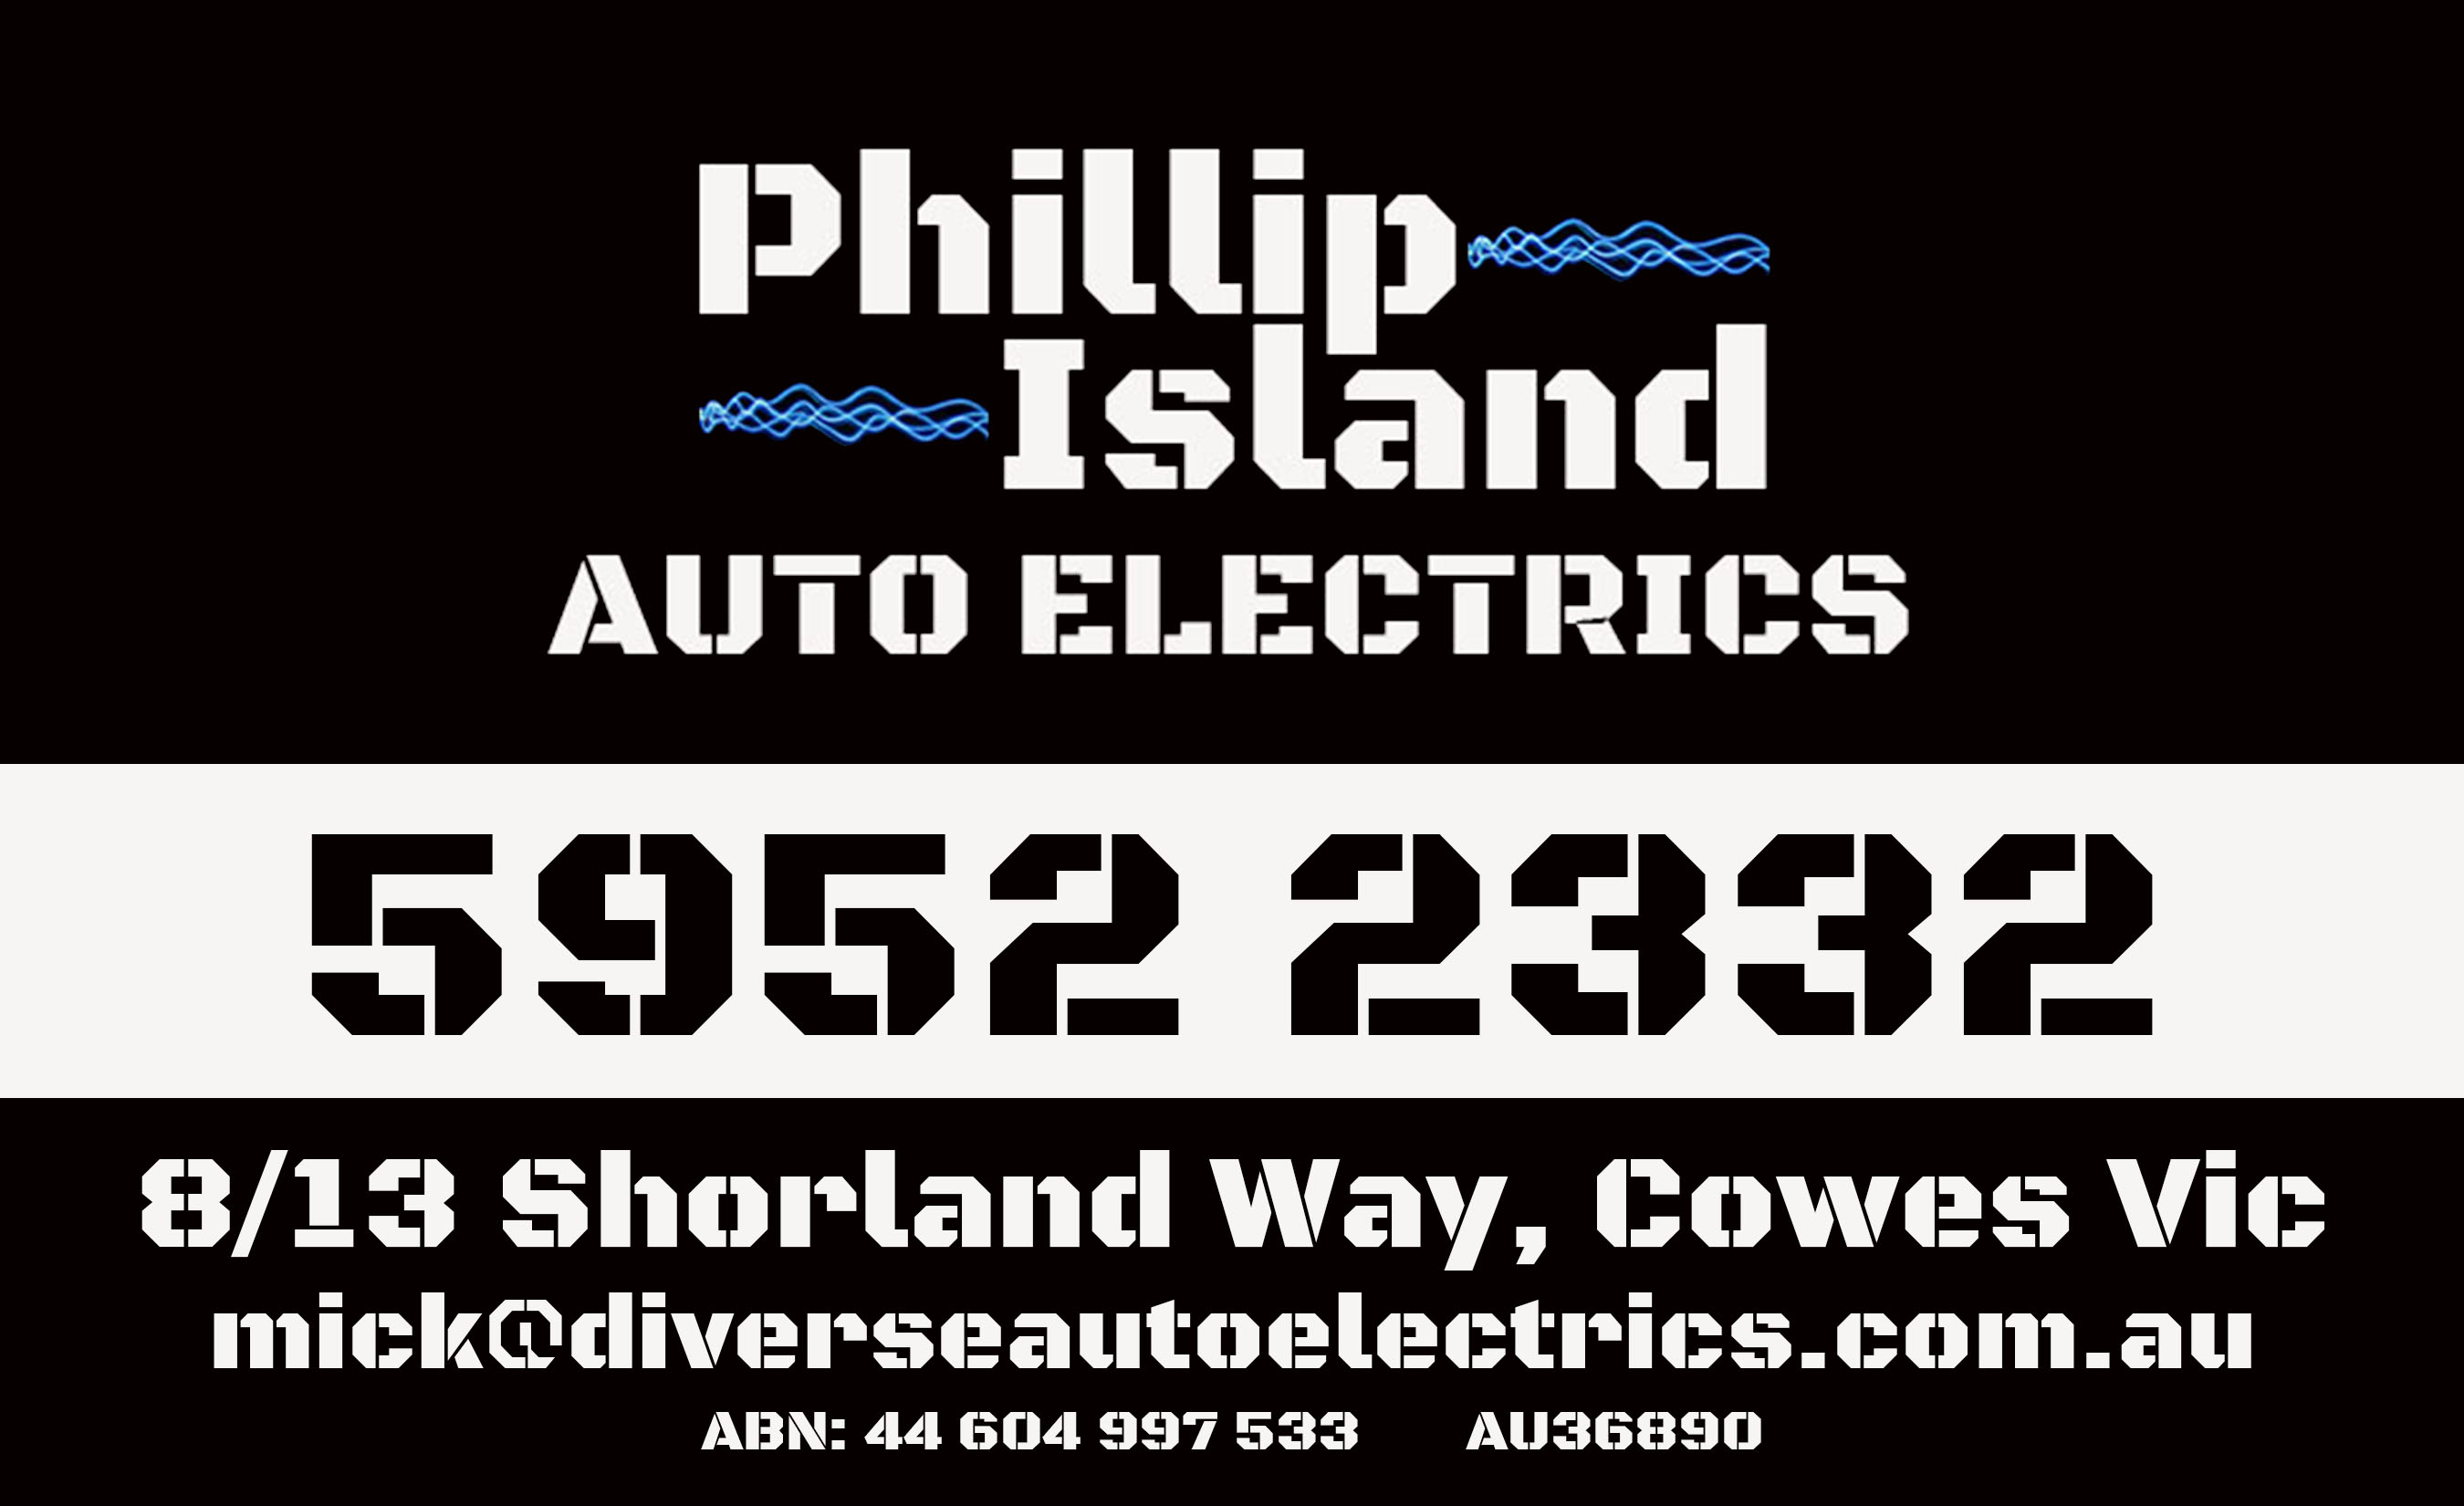 Auto Electrician Phillip Island